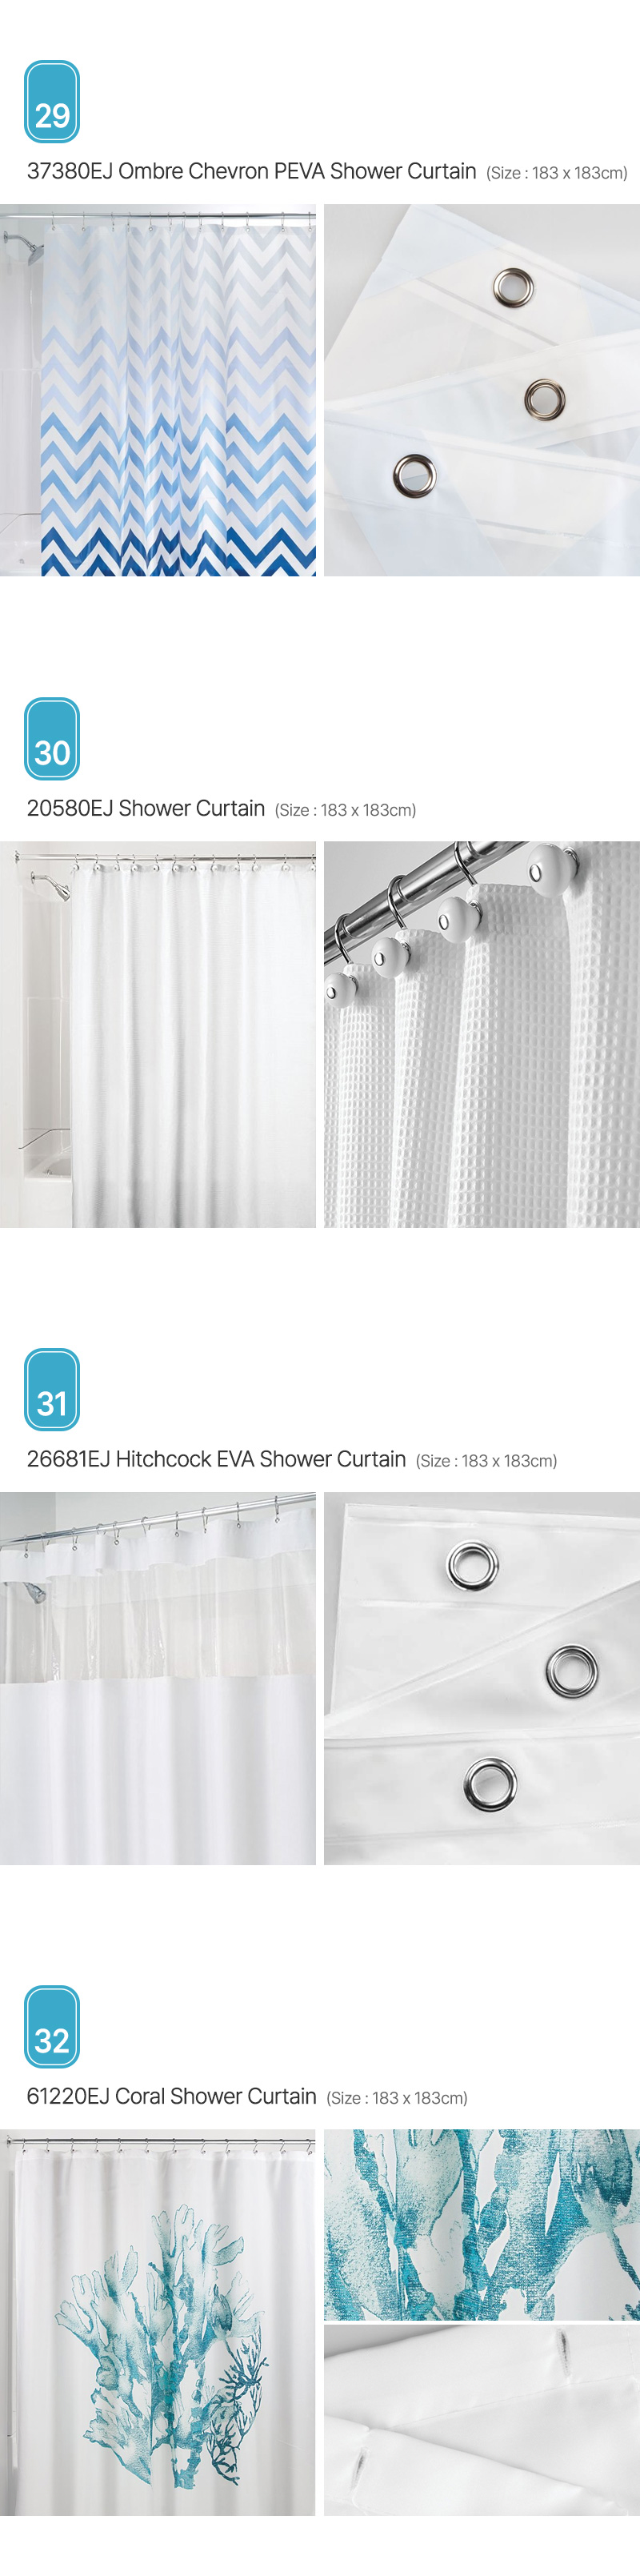 Aria_Shower-Curtain_08.jpg